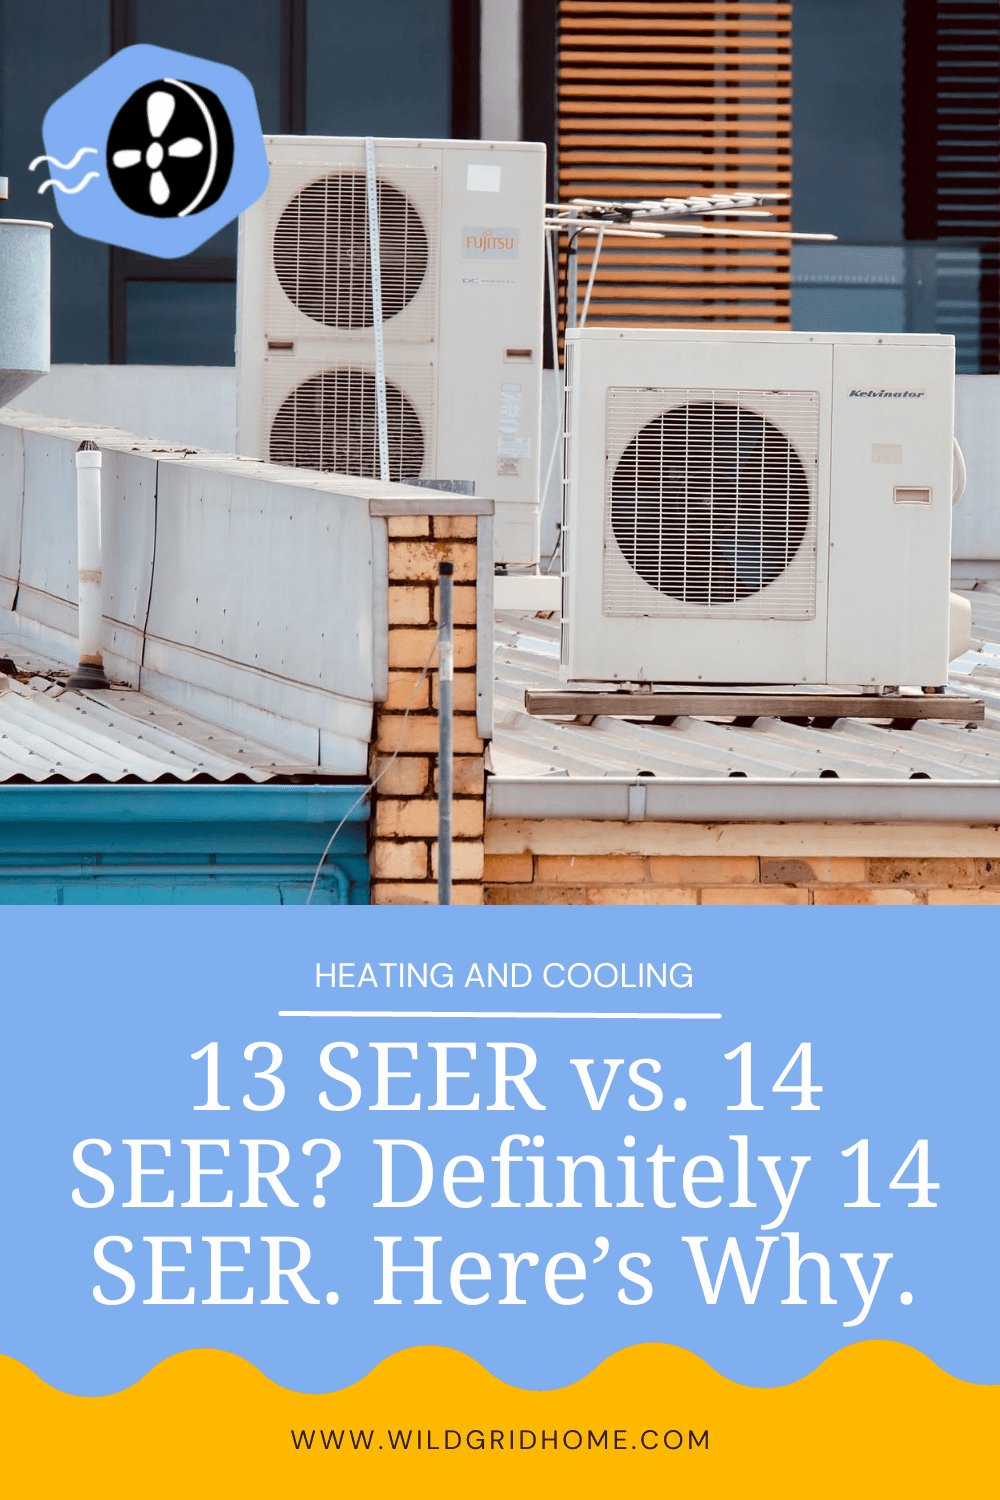 13 SEER vs 14 SEER? Definitely 14 SEER. Here’s Why.